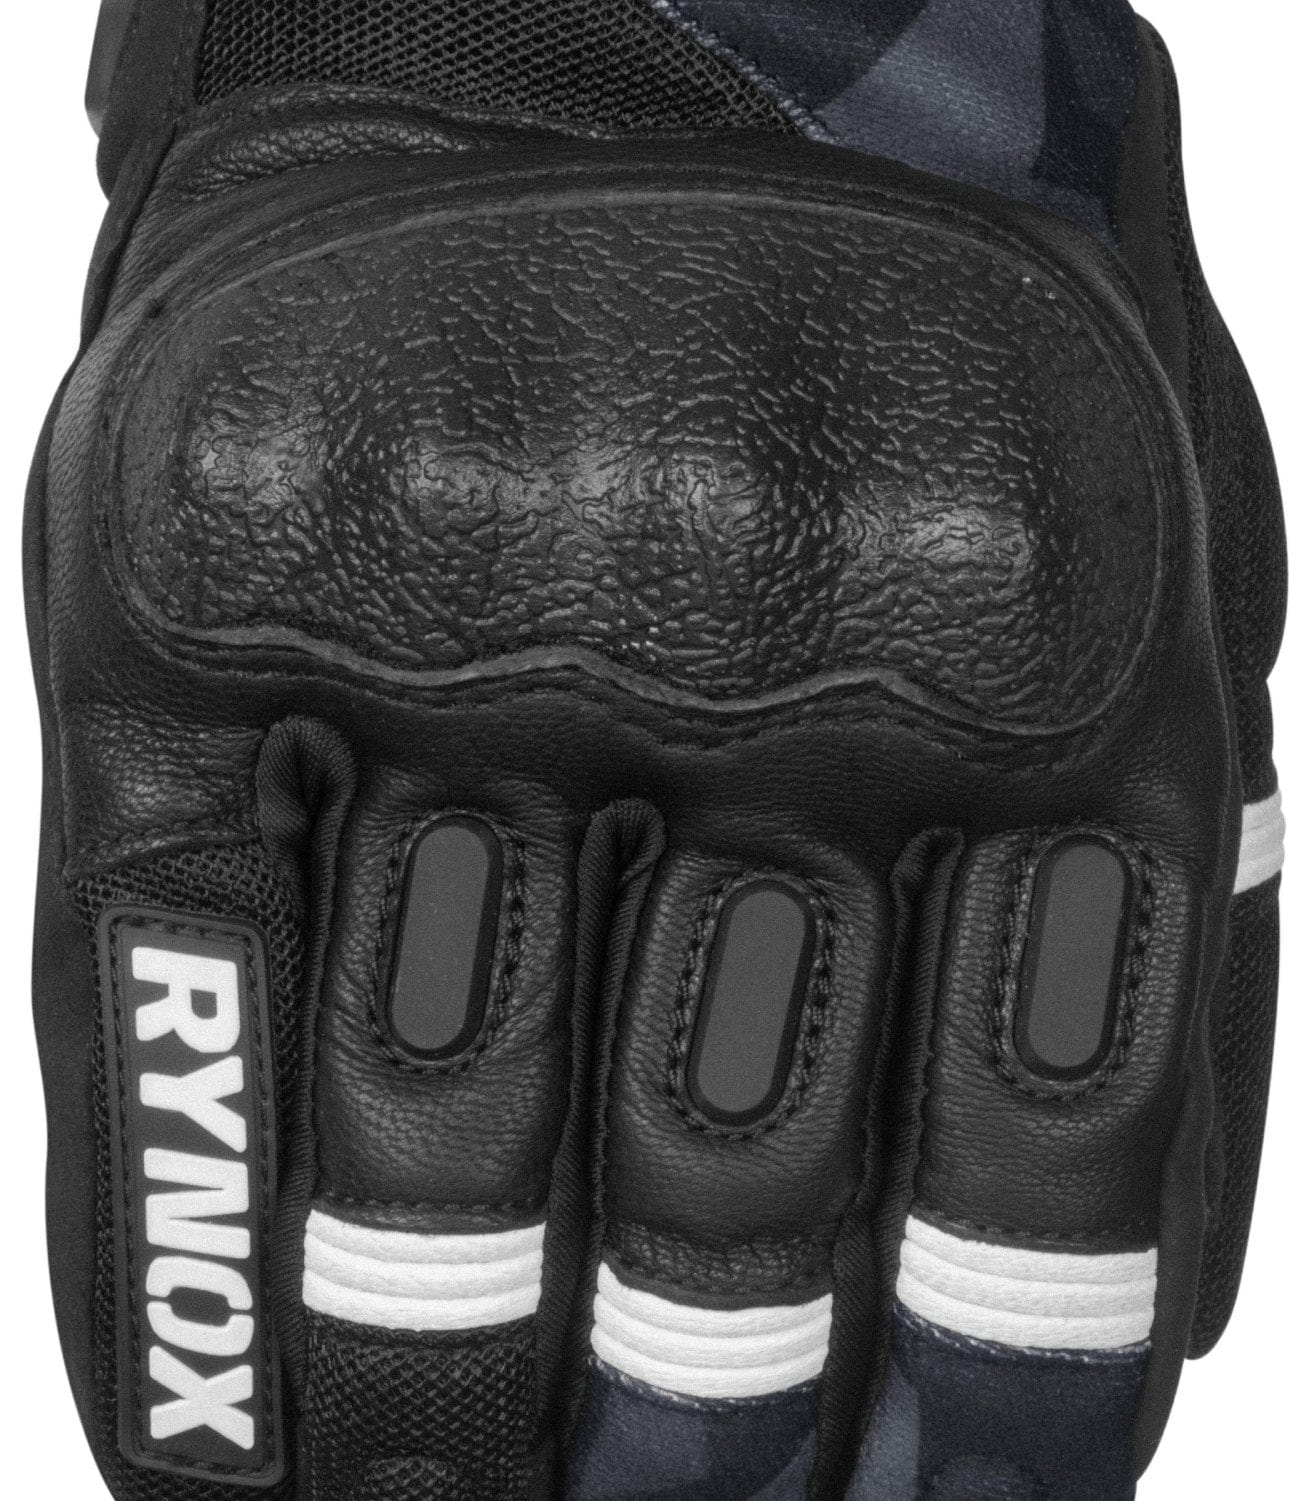 Rynox Urban X Gloves - Destination Moto